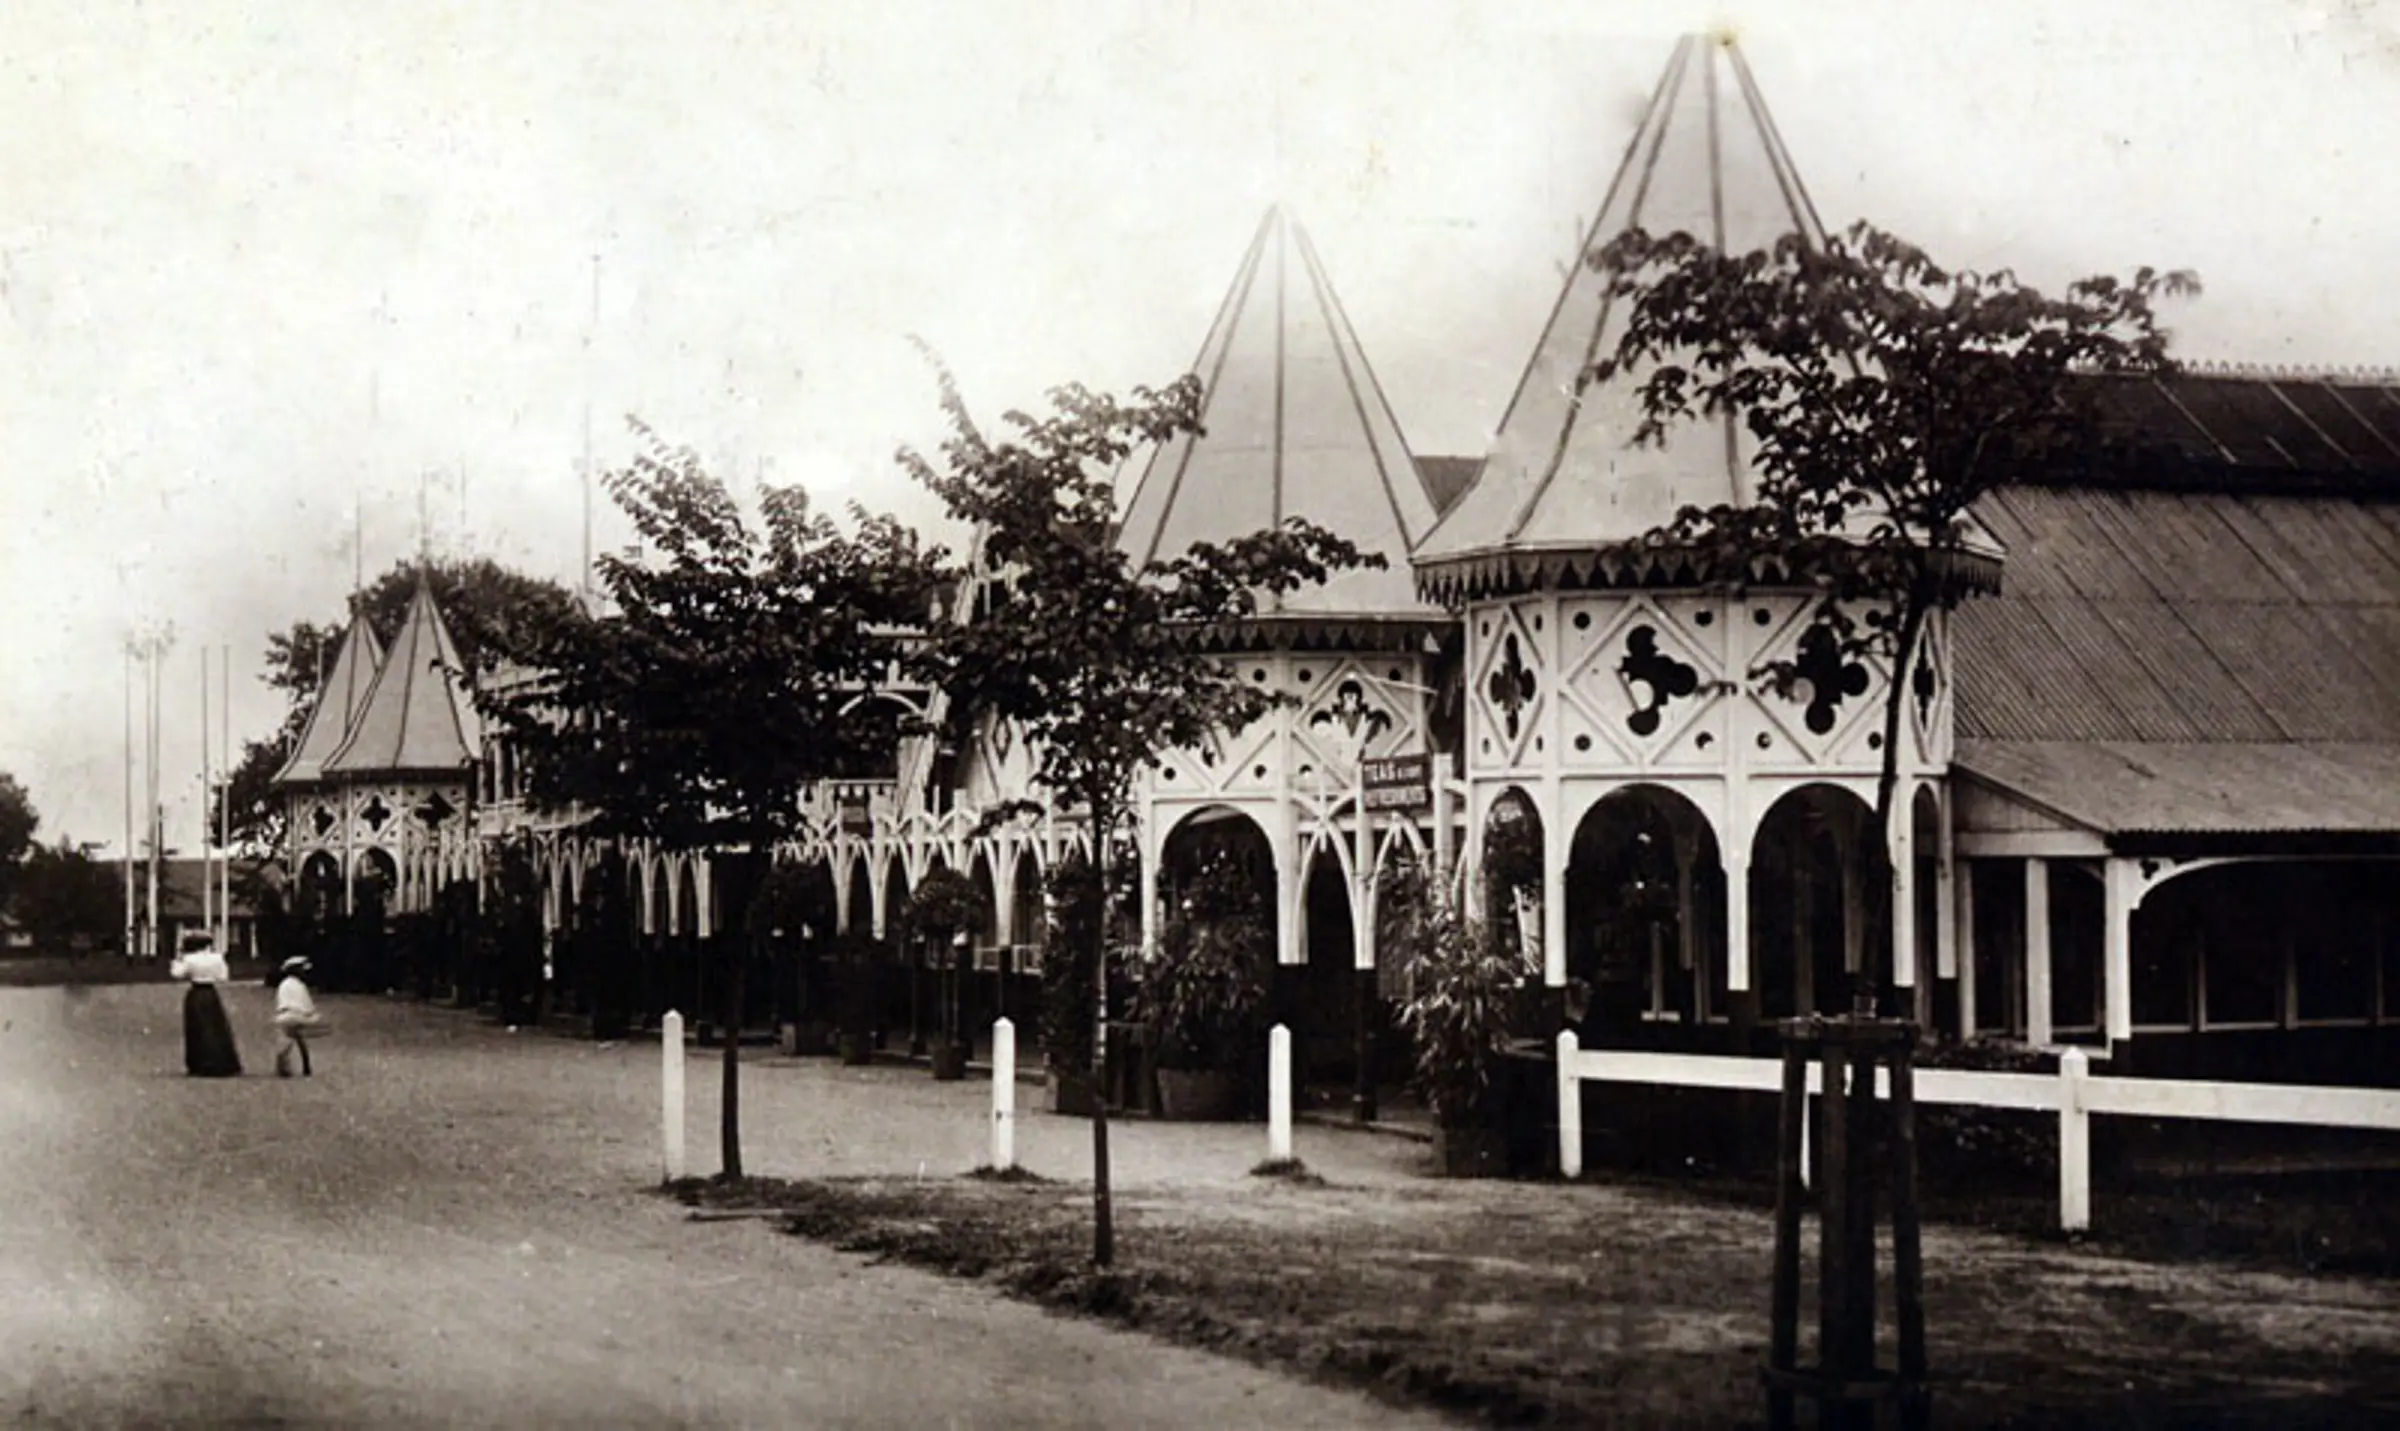 Bisley Pavilion